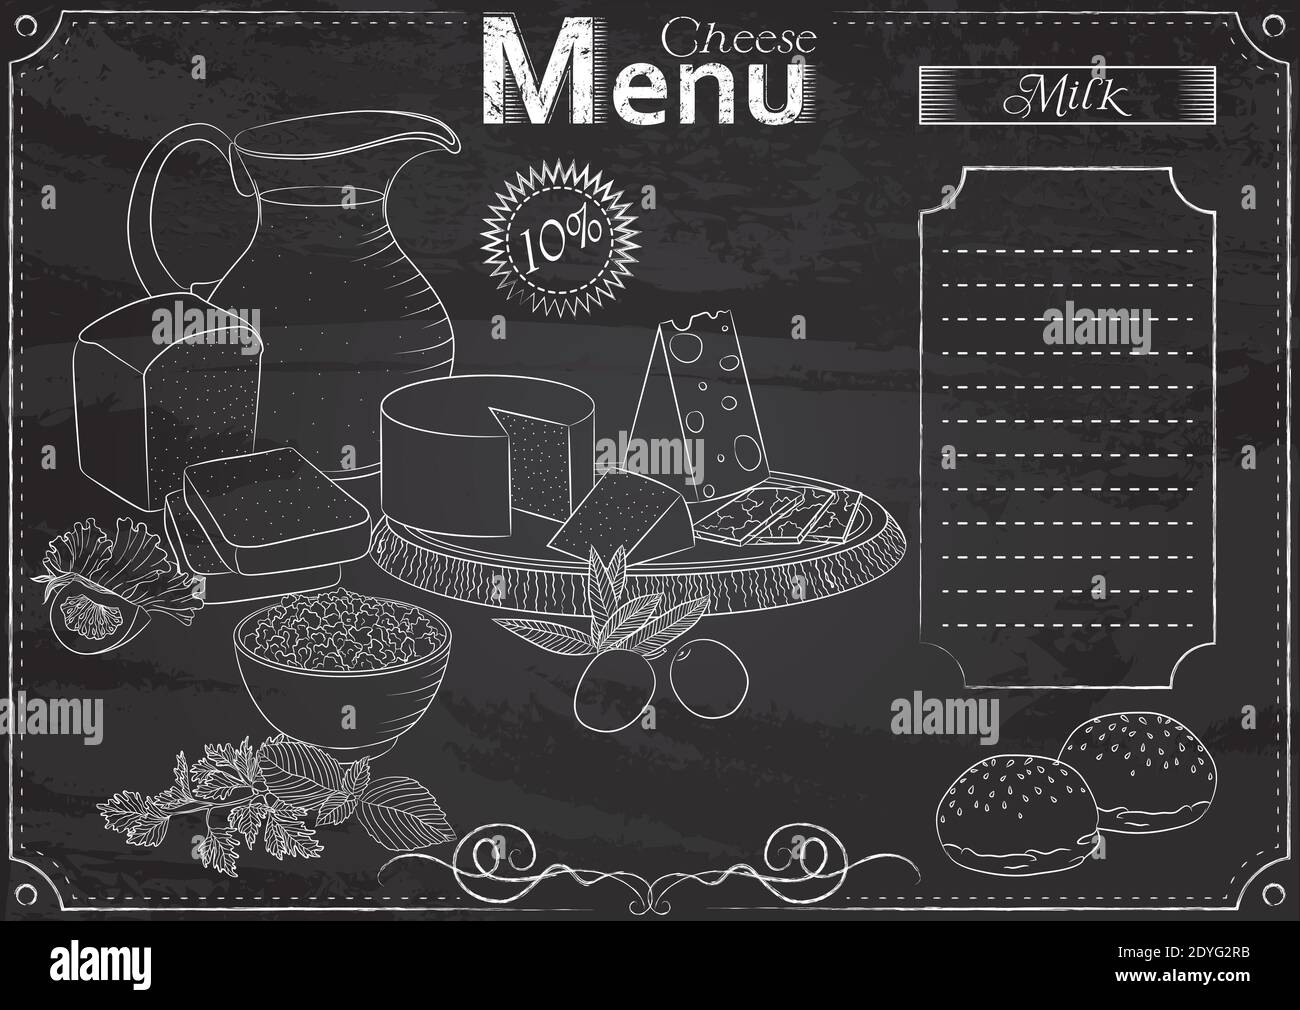 Modèle vectoriel avec éléments de fromage pour le menu stylisé comme dessin à la craie sur tableau noir.Design pour un restaurant, un café ou un bar Illustration de Vecteur